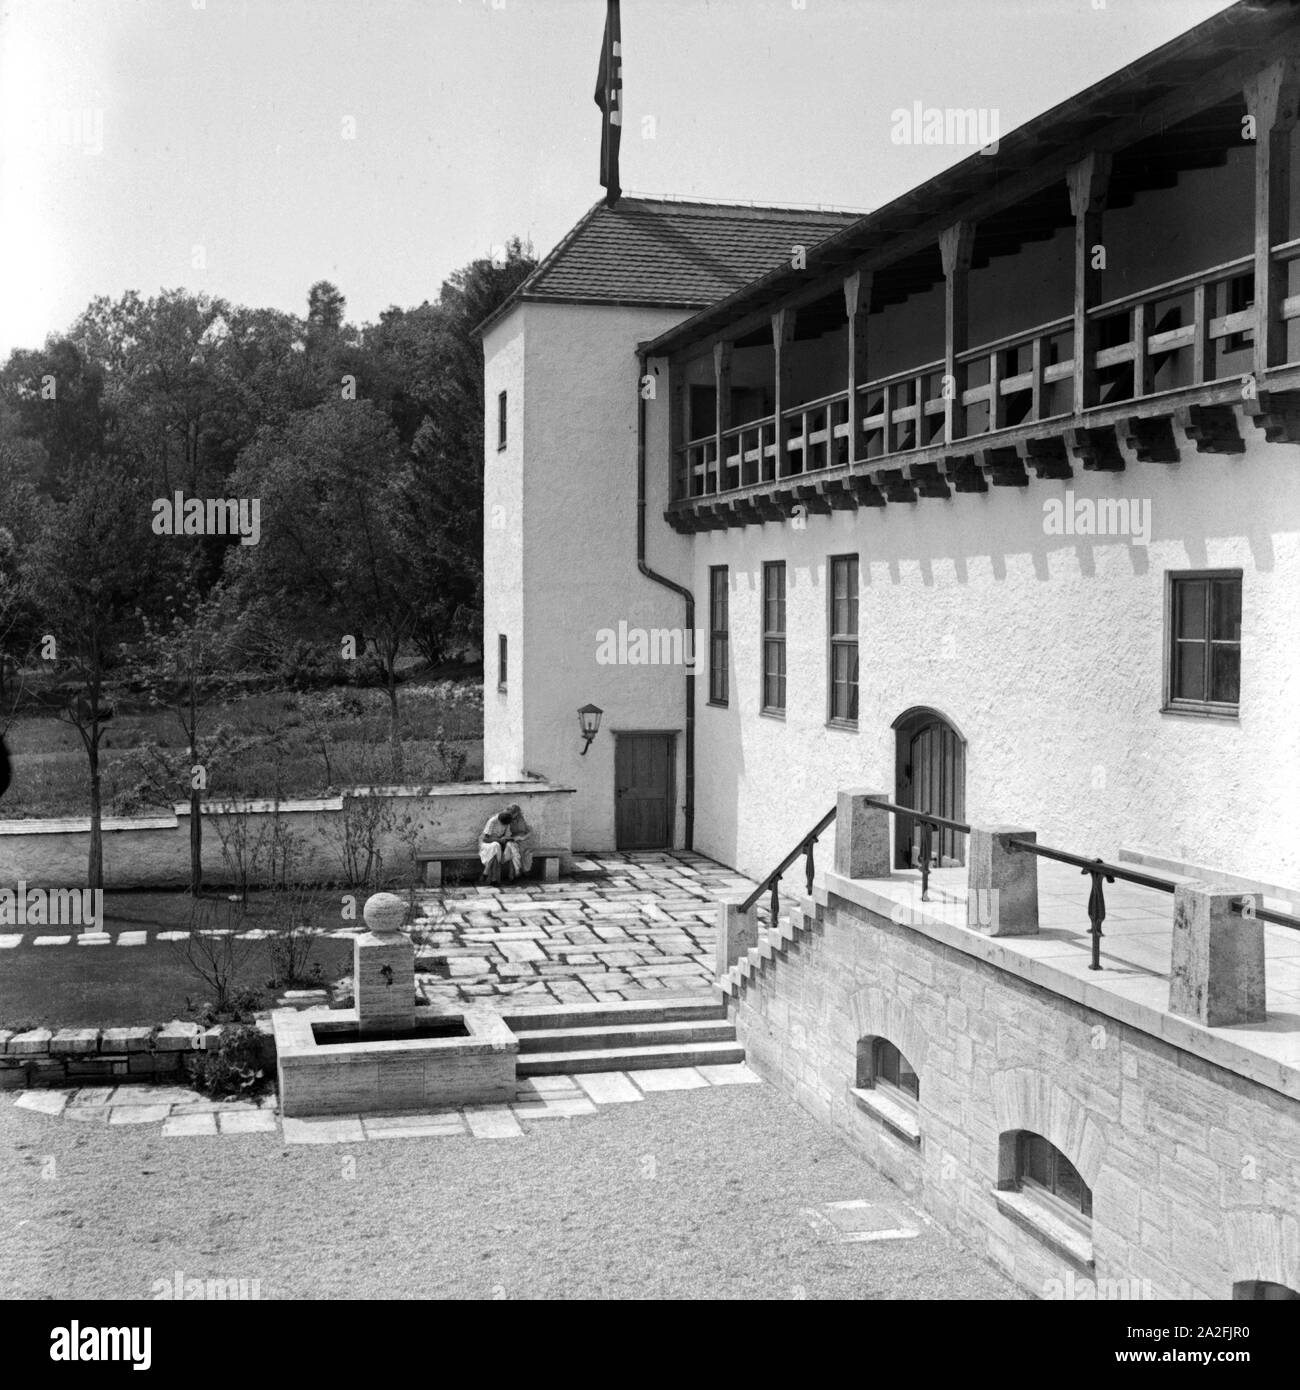 Hofansicht der Haushaltungsschule Greifenberg, Deutschland 1930er Jahre. Building of the domestic science school at Greifenberg, Germany 1930s. Stock Photo